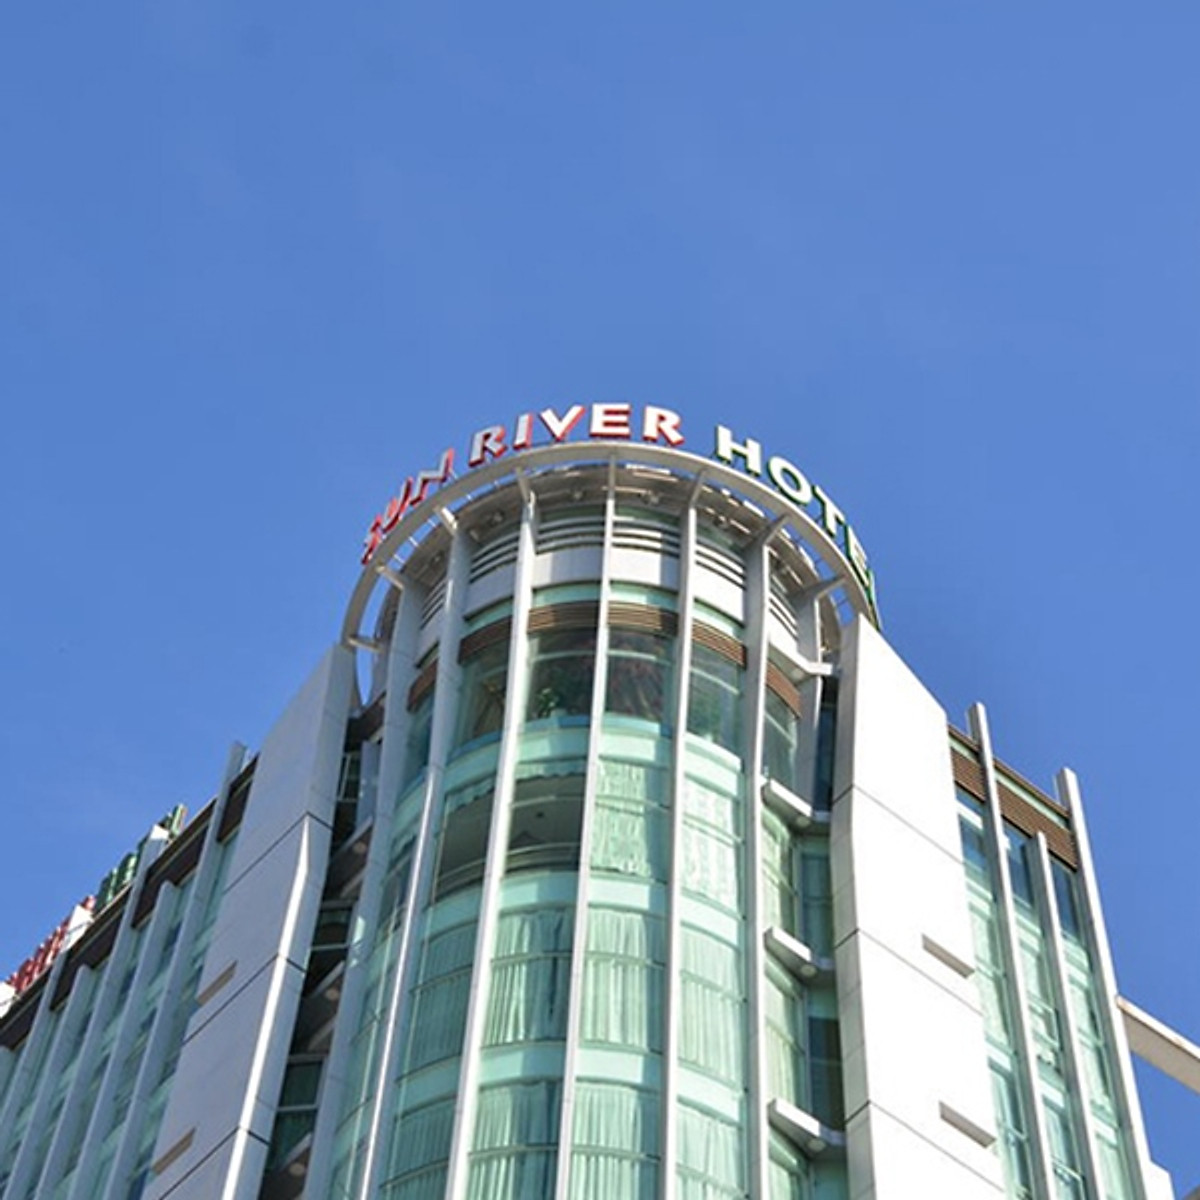 Sun River Hotel 3* Đà Nẵng - Vị Trí Cực Đẹp, Đối Diện Sông Hàn, Gần Cầu Sông Hàn, Chợ Hàn, Bao Gồm Bữa Sáng Và Nhiều Ưu Đãi Hấp Dẫn